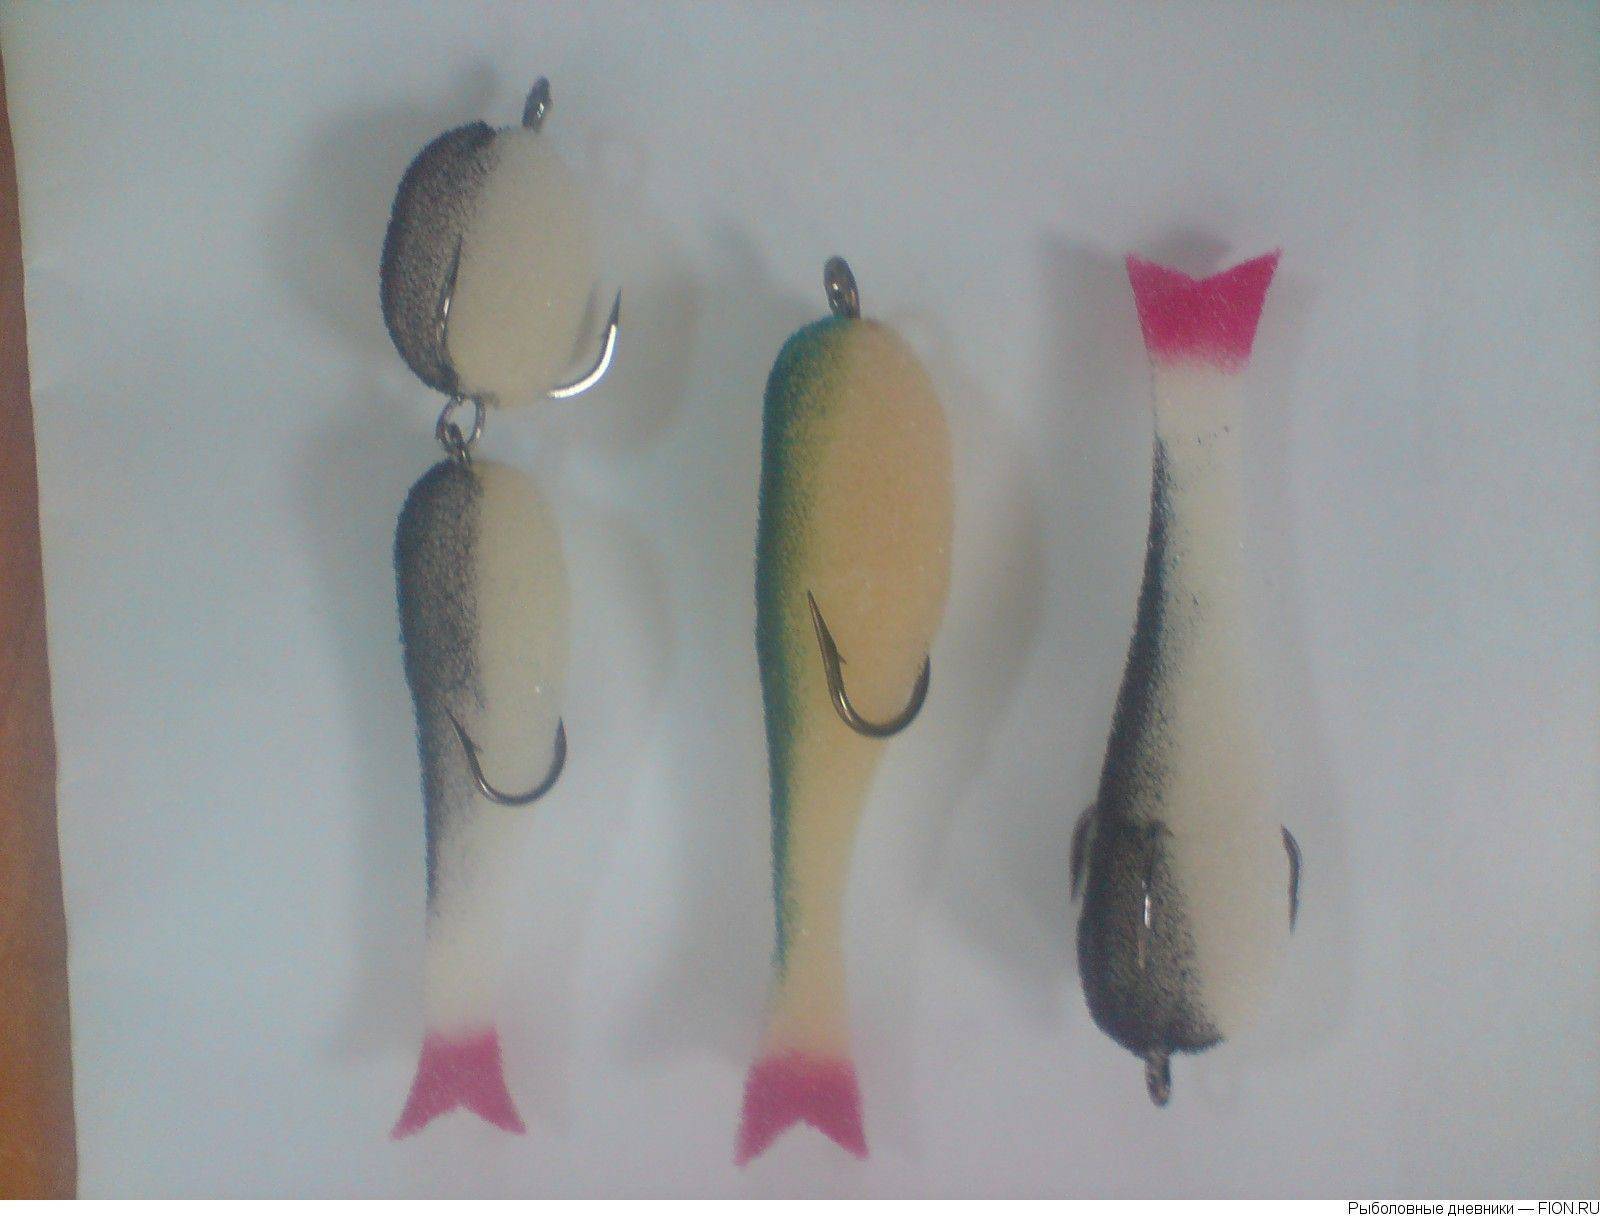 Оснастка поролоновой рыбки — изготовление огрузки, покраска, хранение из поролона приманки